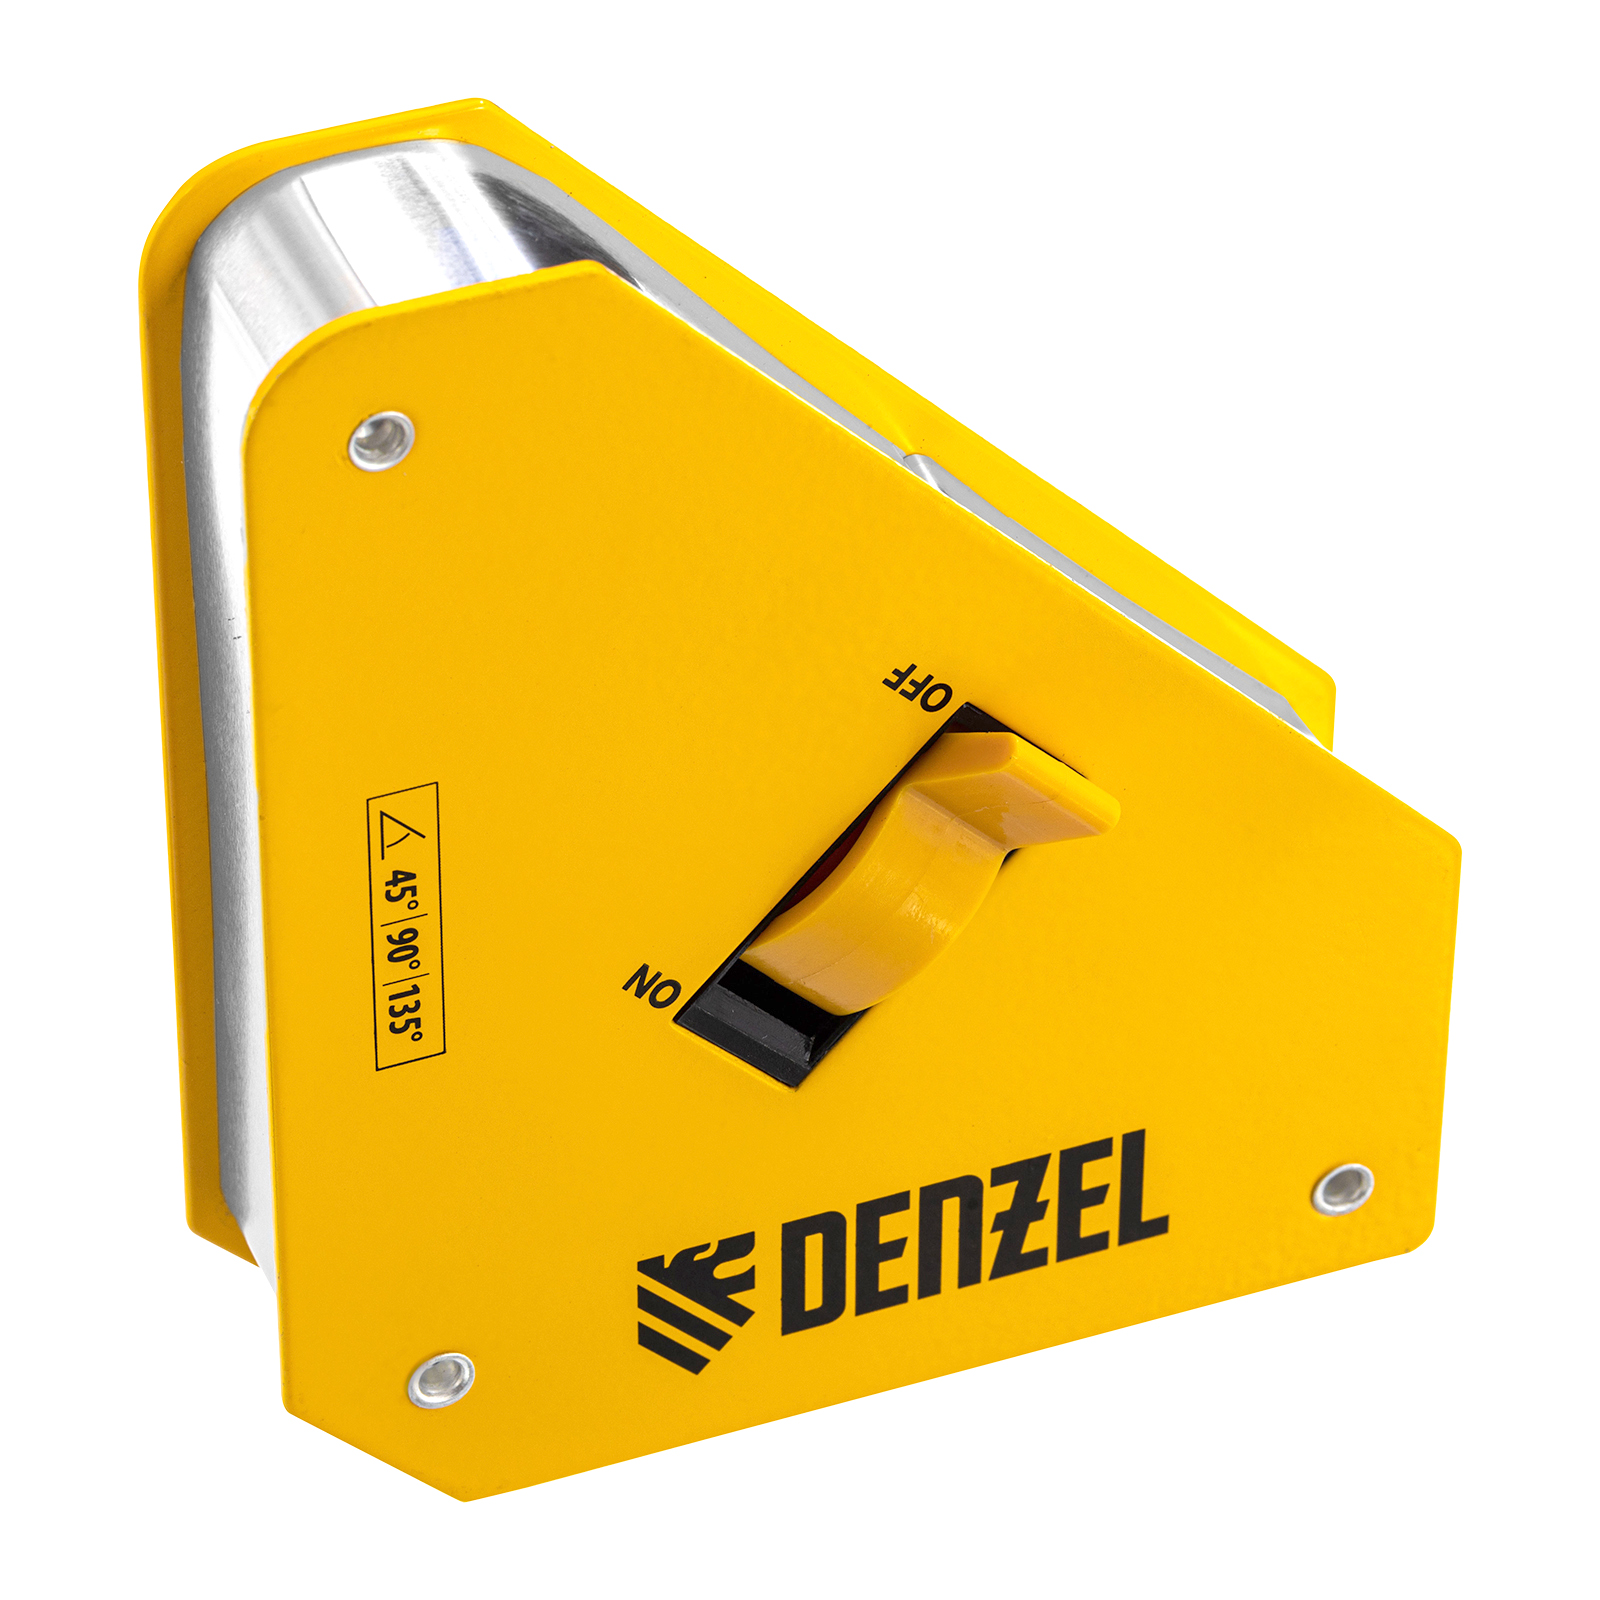 Фиксатор магнитный отключаемый для сварочных работ DENZEL усилие 55 LB, 45х90 град. 97562 магнитный фиксатор для сварочных работ denzel